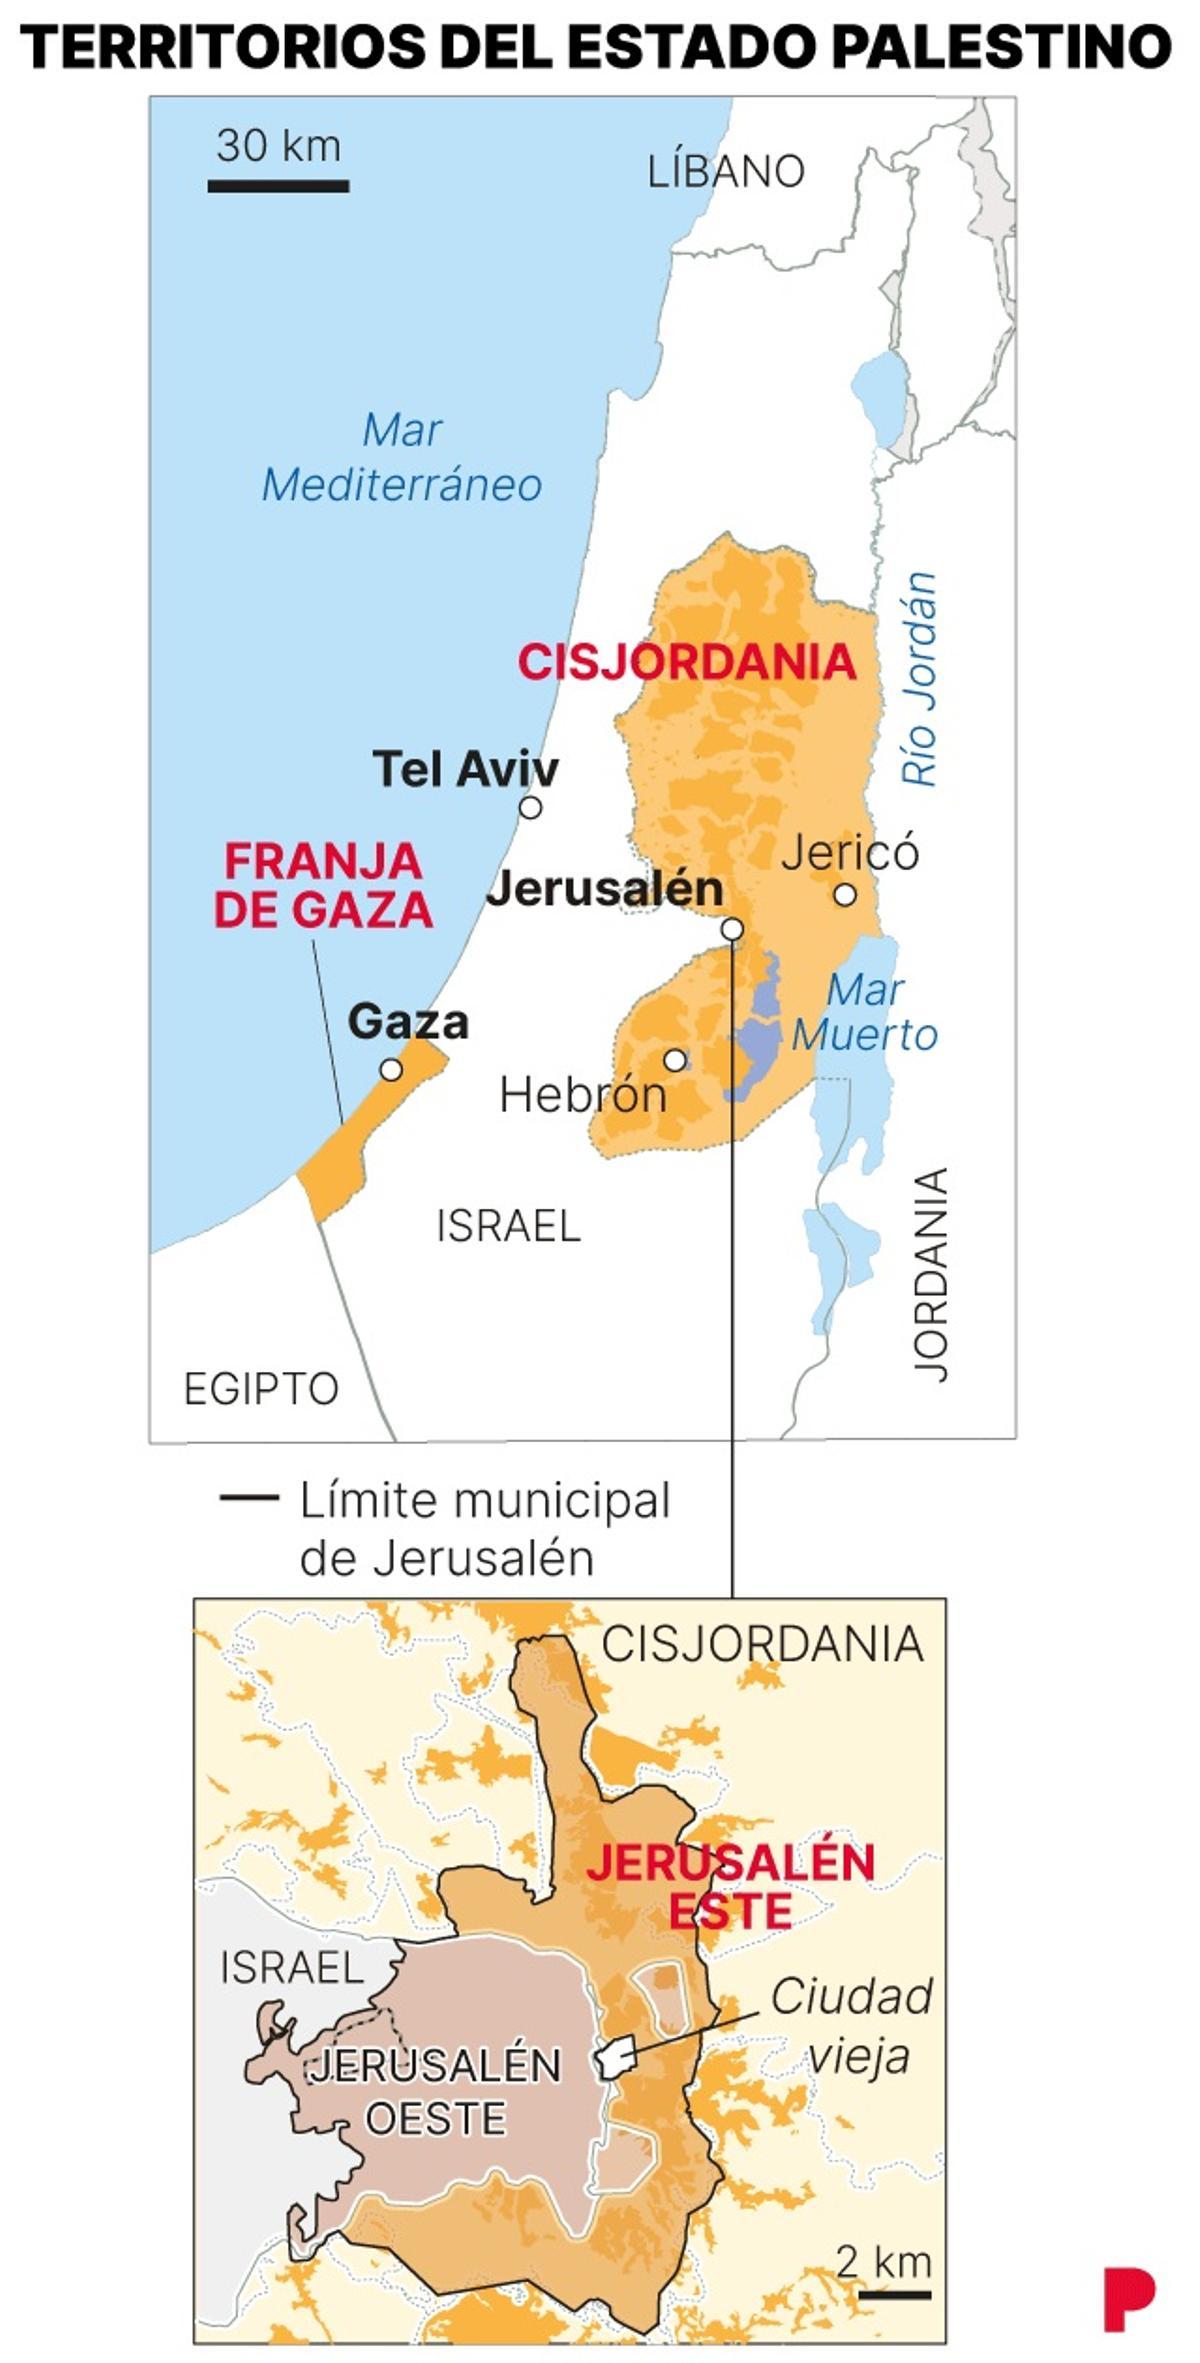 Territorios bajo control palestino.